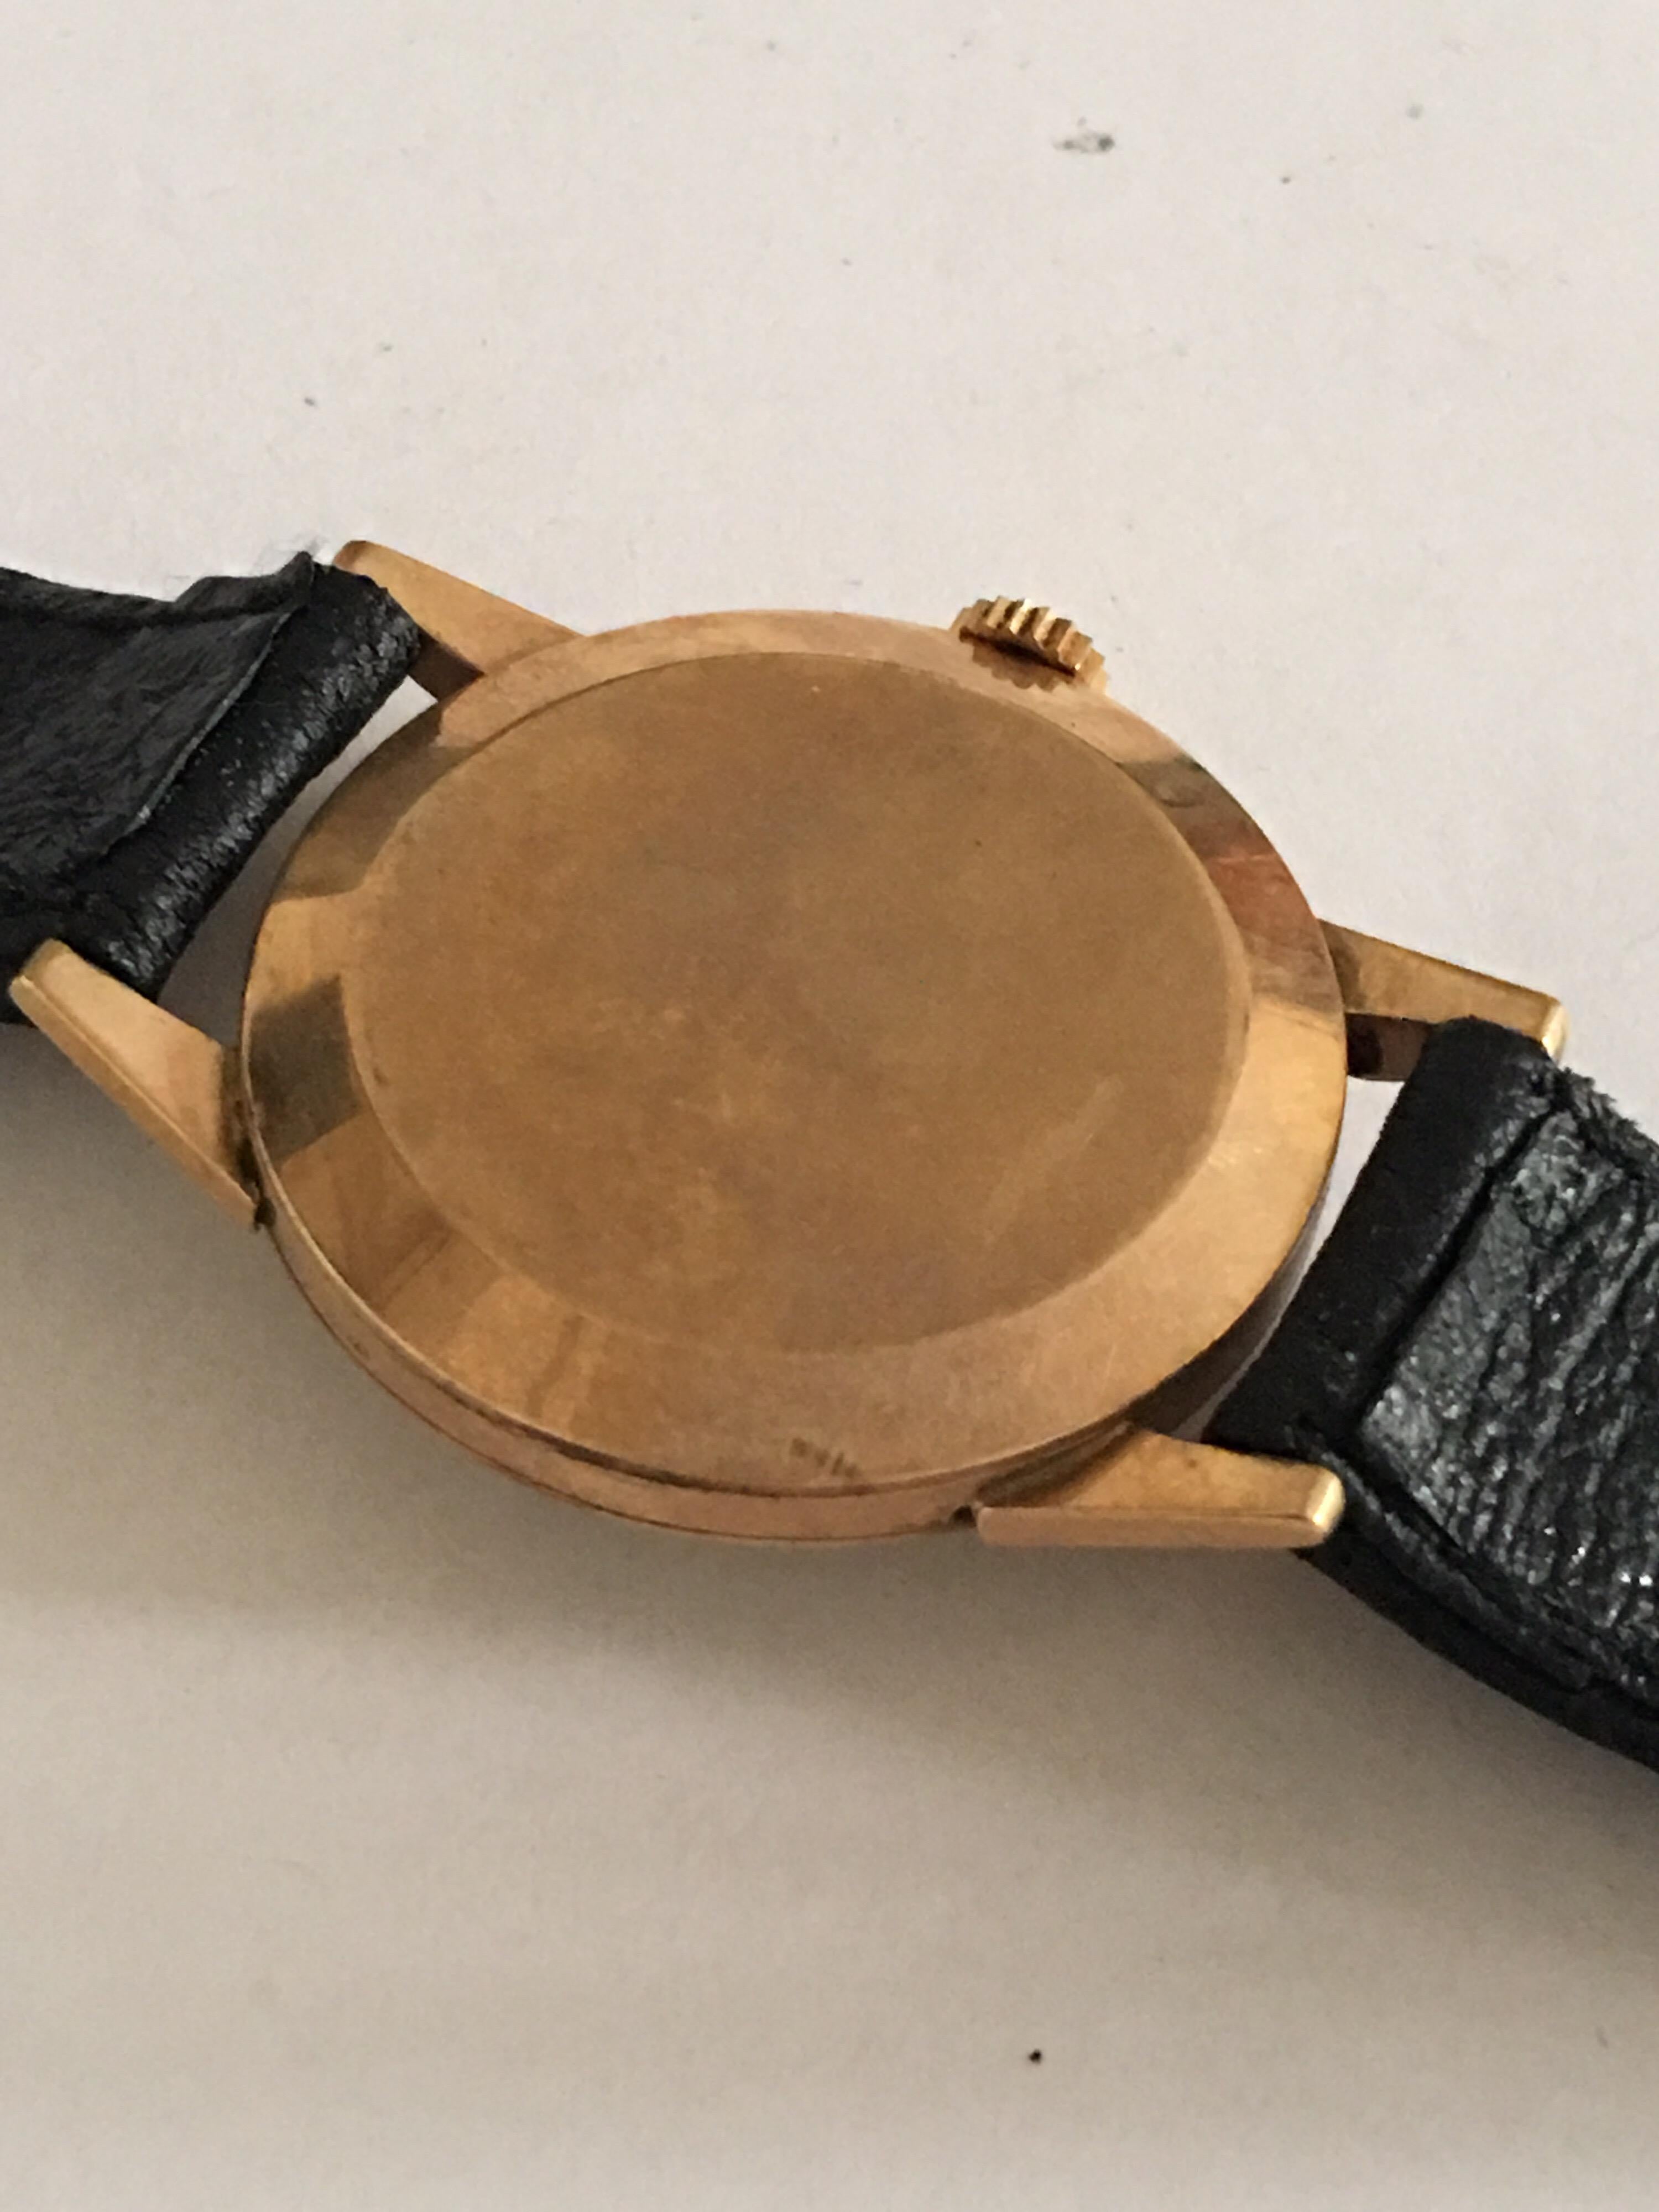 9 Karat Gold Vintage J. W. Benson London 1950s Manual Wristwatch For Sale 4